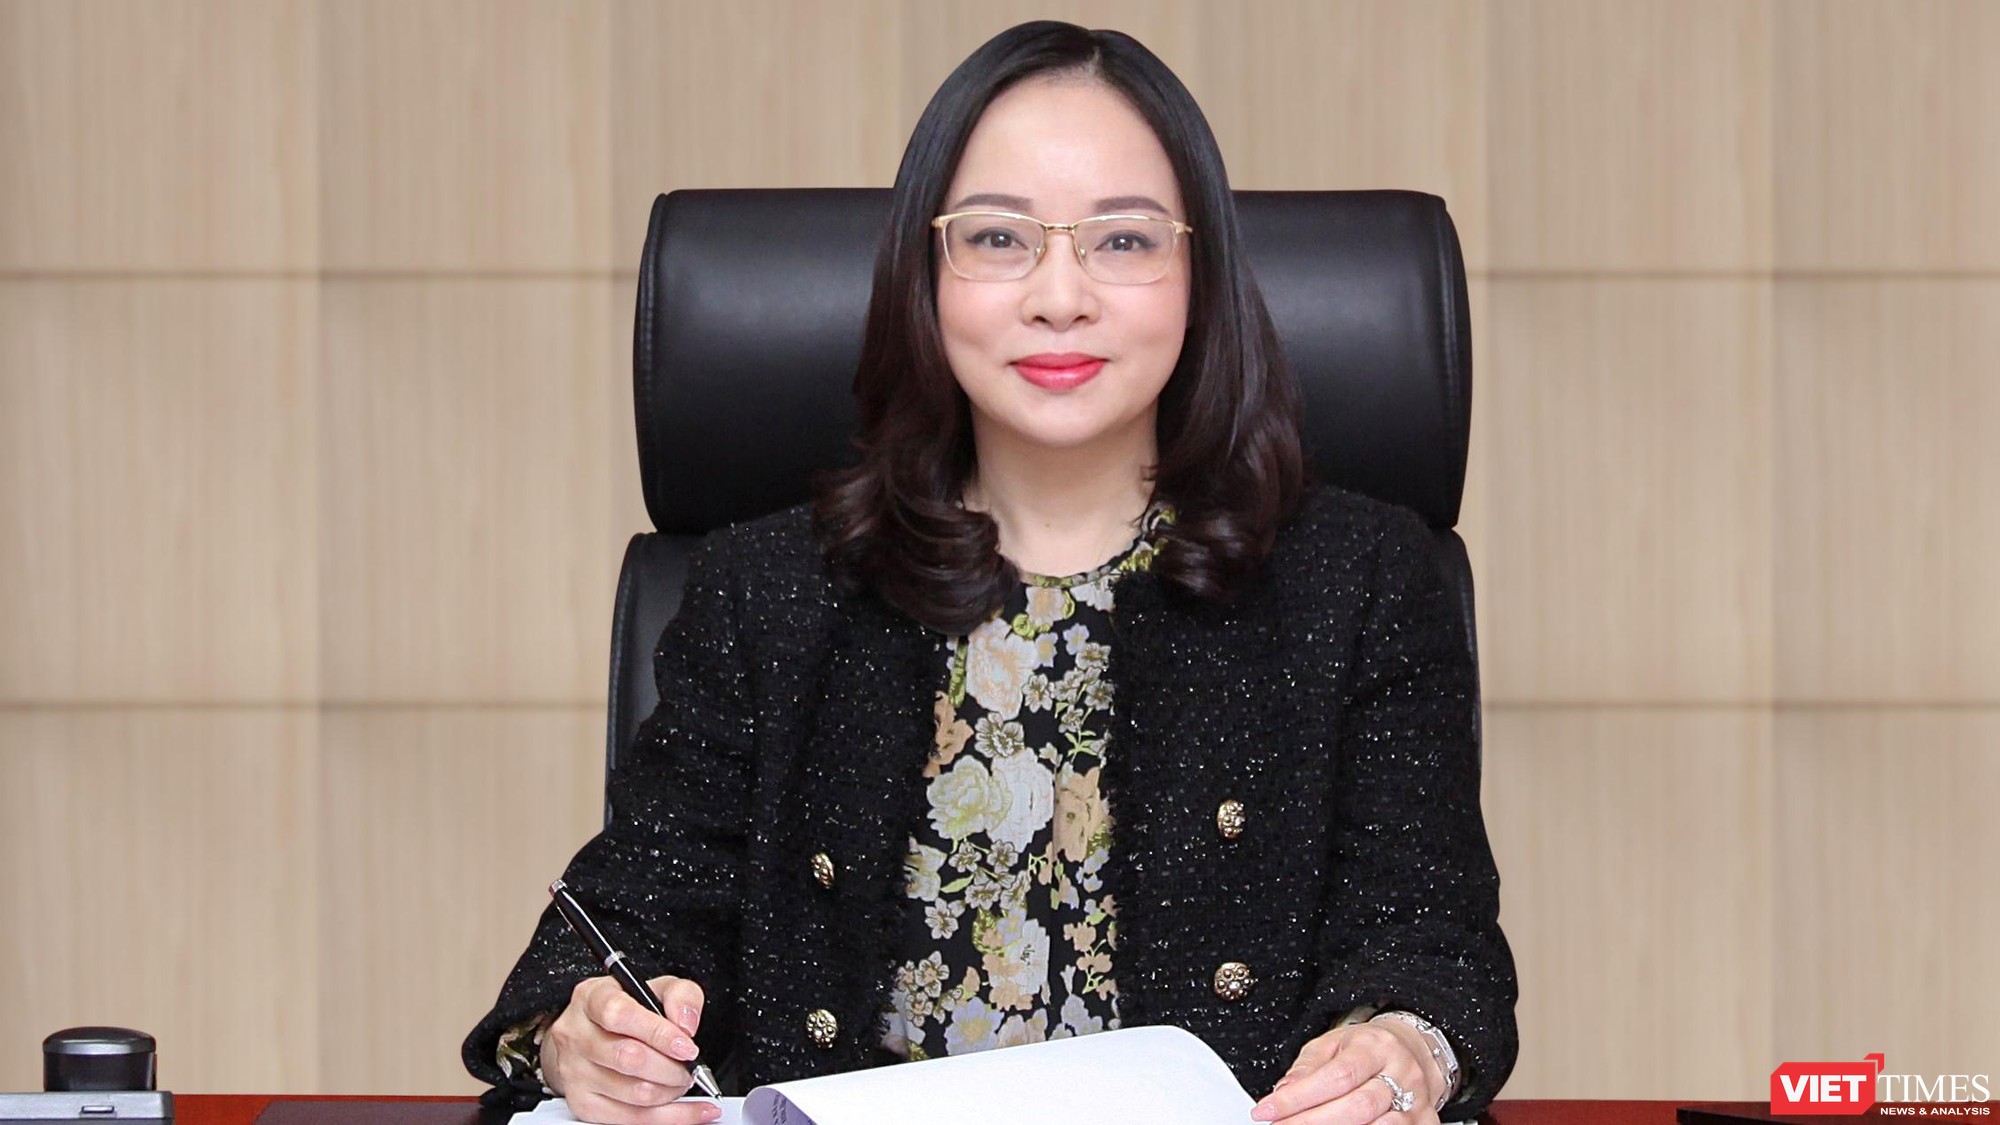 Bà Hoàng Thị Bảo Hương - Phó Tổng Biên tập báo VietnamNet.